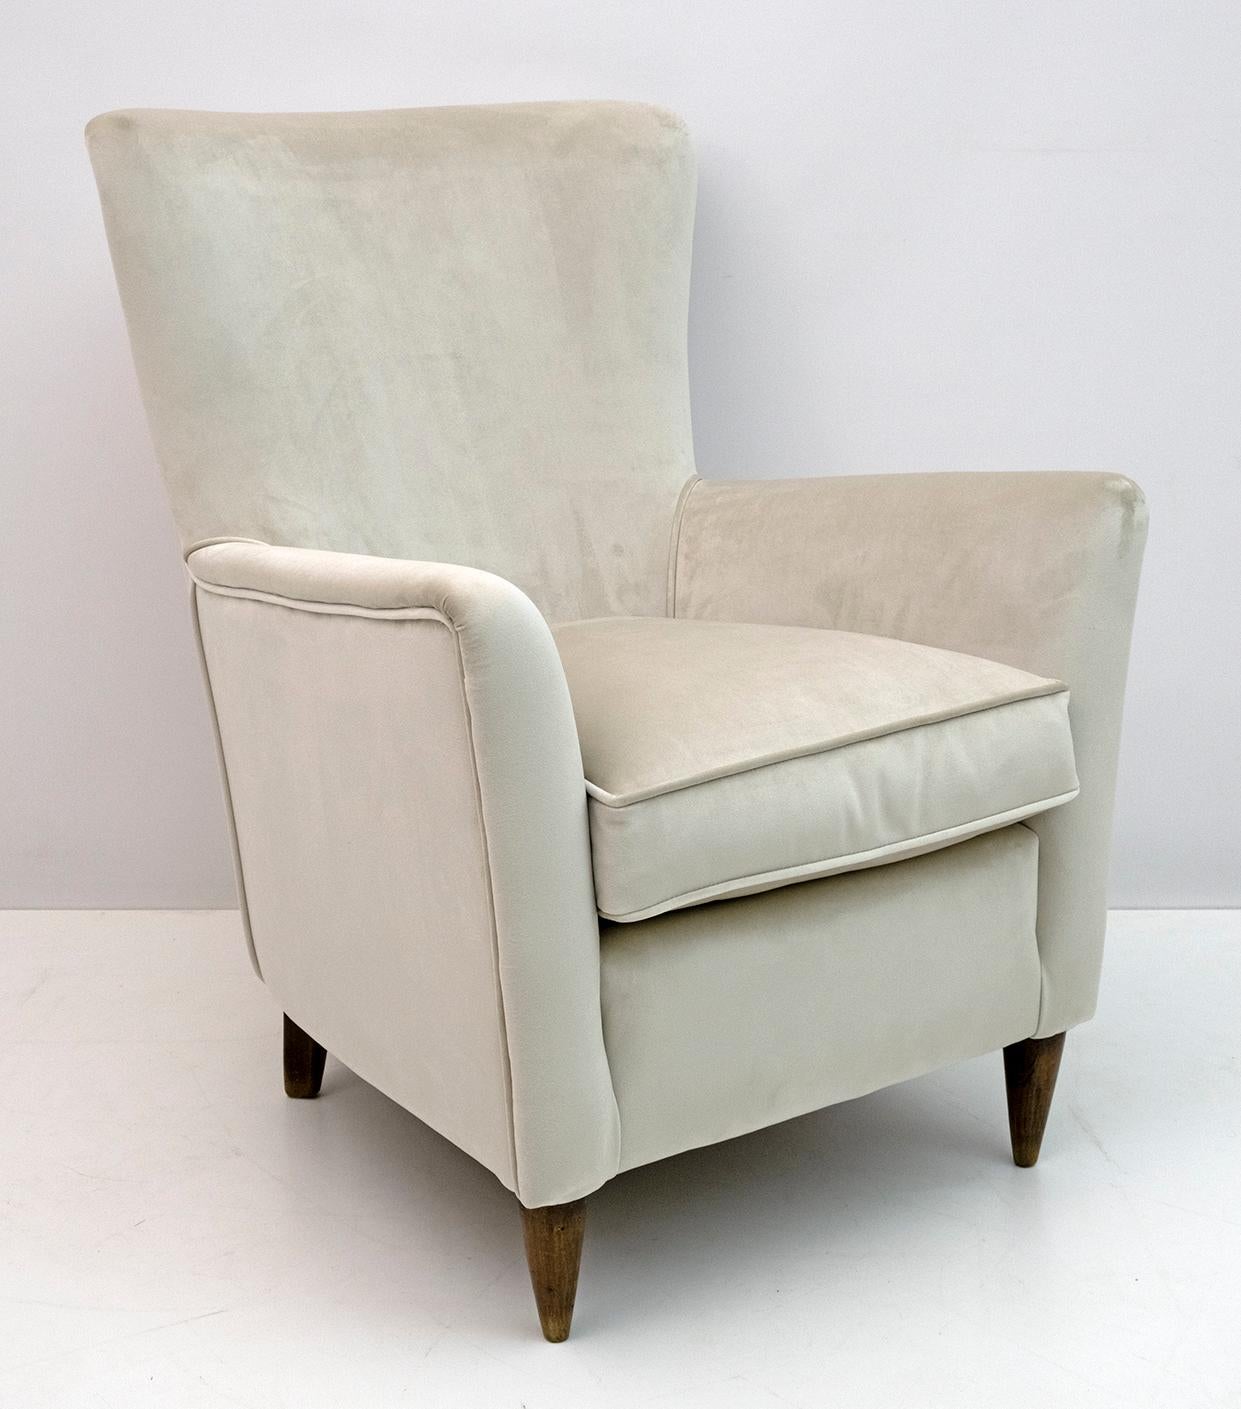 Elegantes und prächtiges Paar Sessel aus der Mitte des Jahrhunderts, Gio Ponti zugeschrieben, 1950 für ISA Editions, Bergamo. Die Sessel sind mit einem neuen hellen elfenbeinfarbenen Samtbezug ausgestattet.